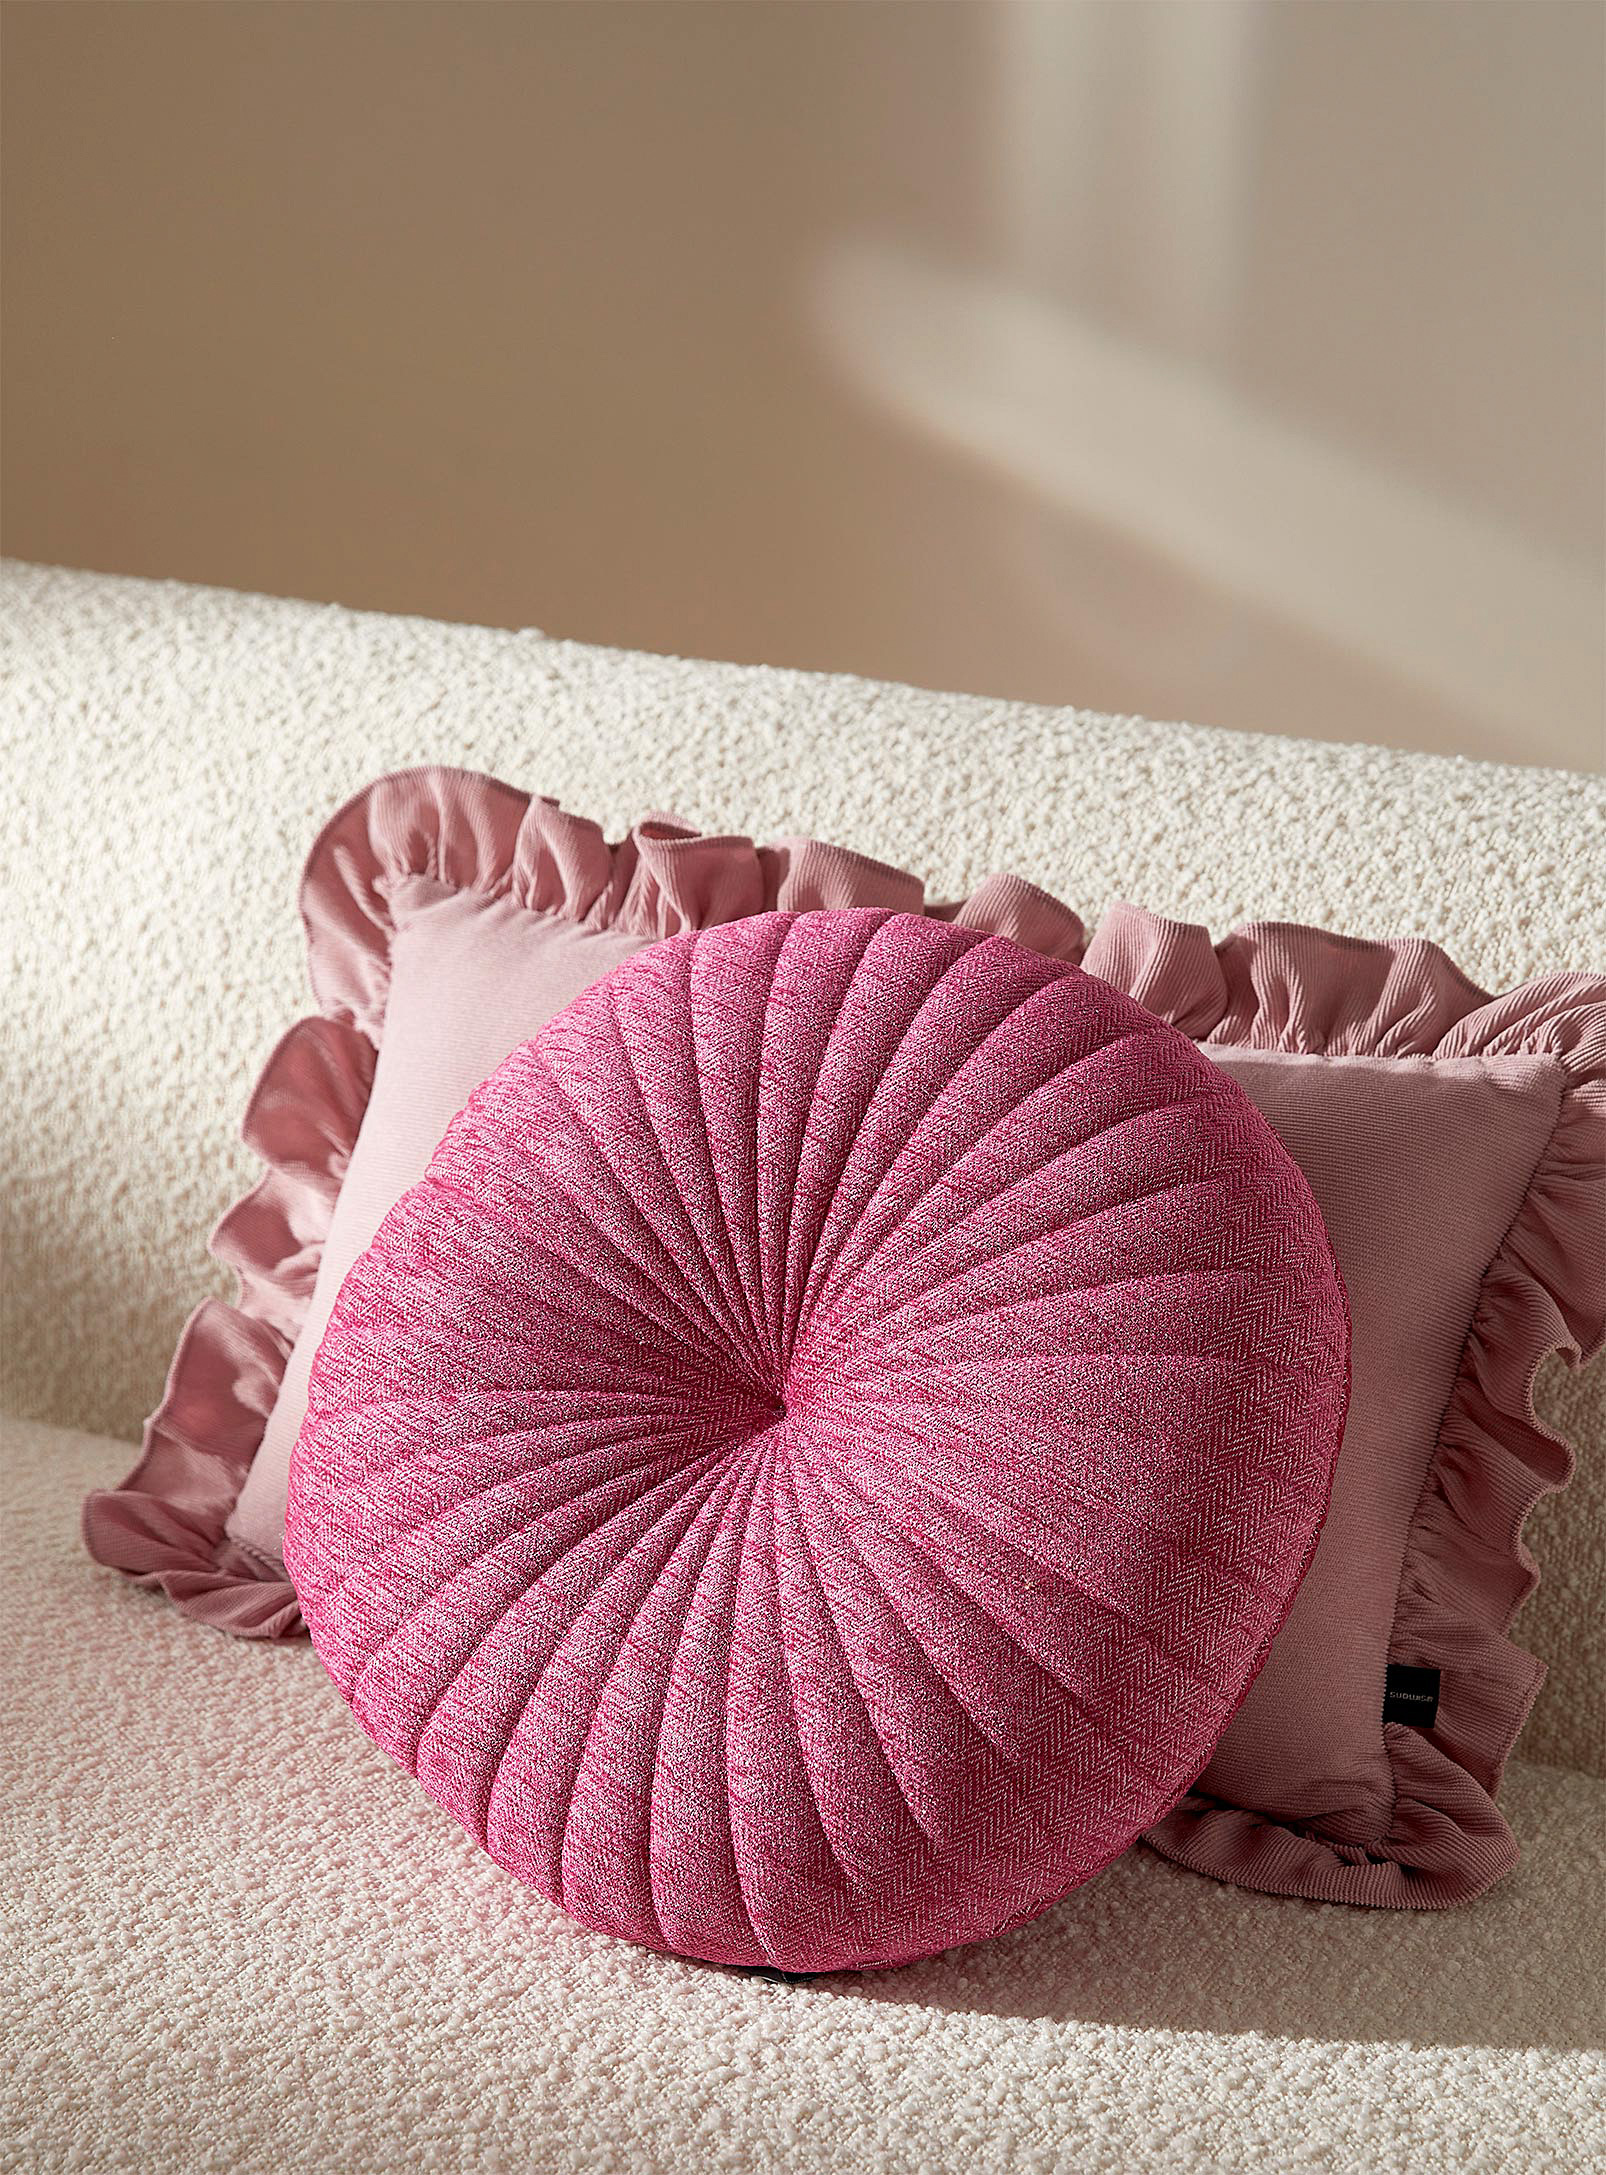 Simons Maison Herringbone Round Cushion 35 Cm In Pink